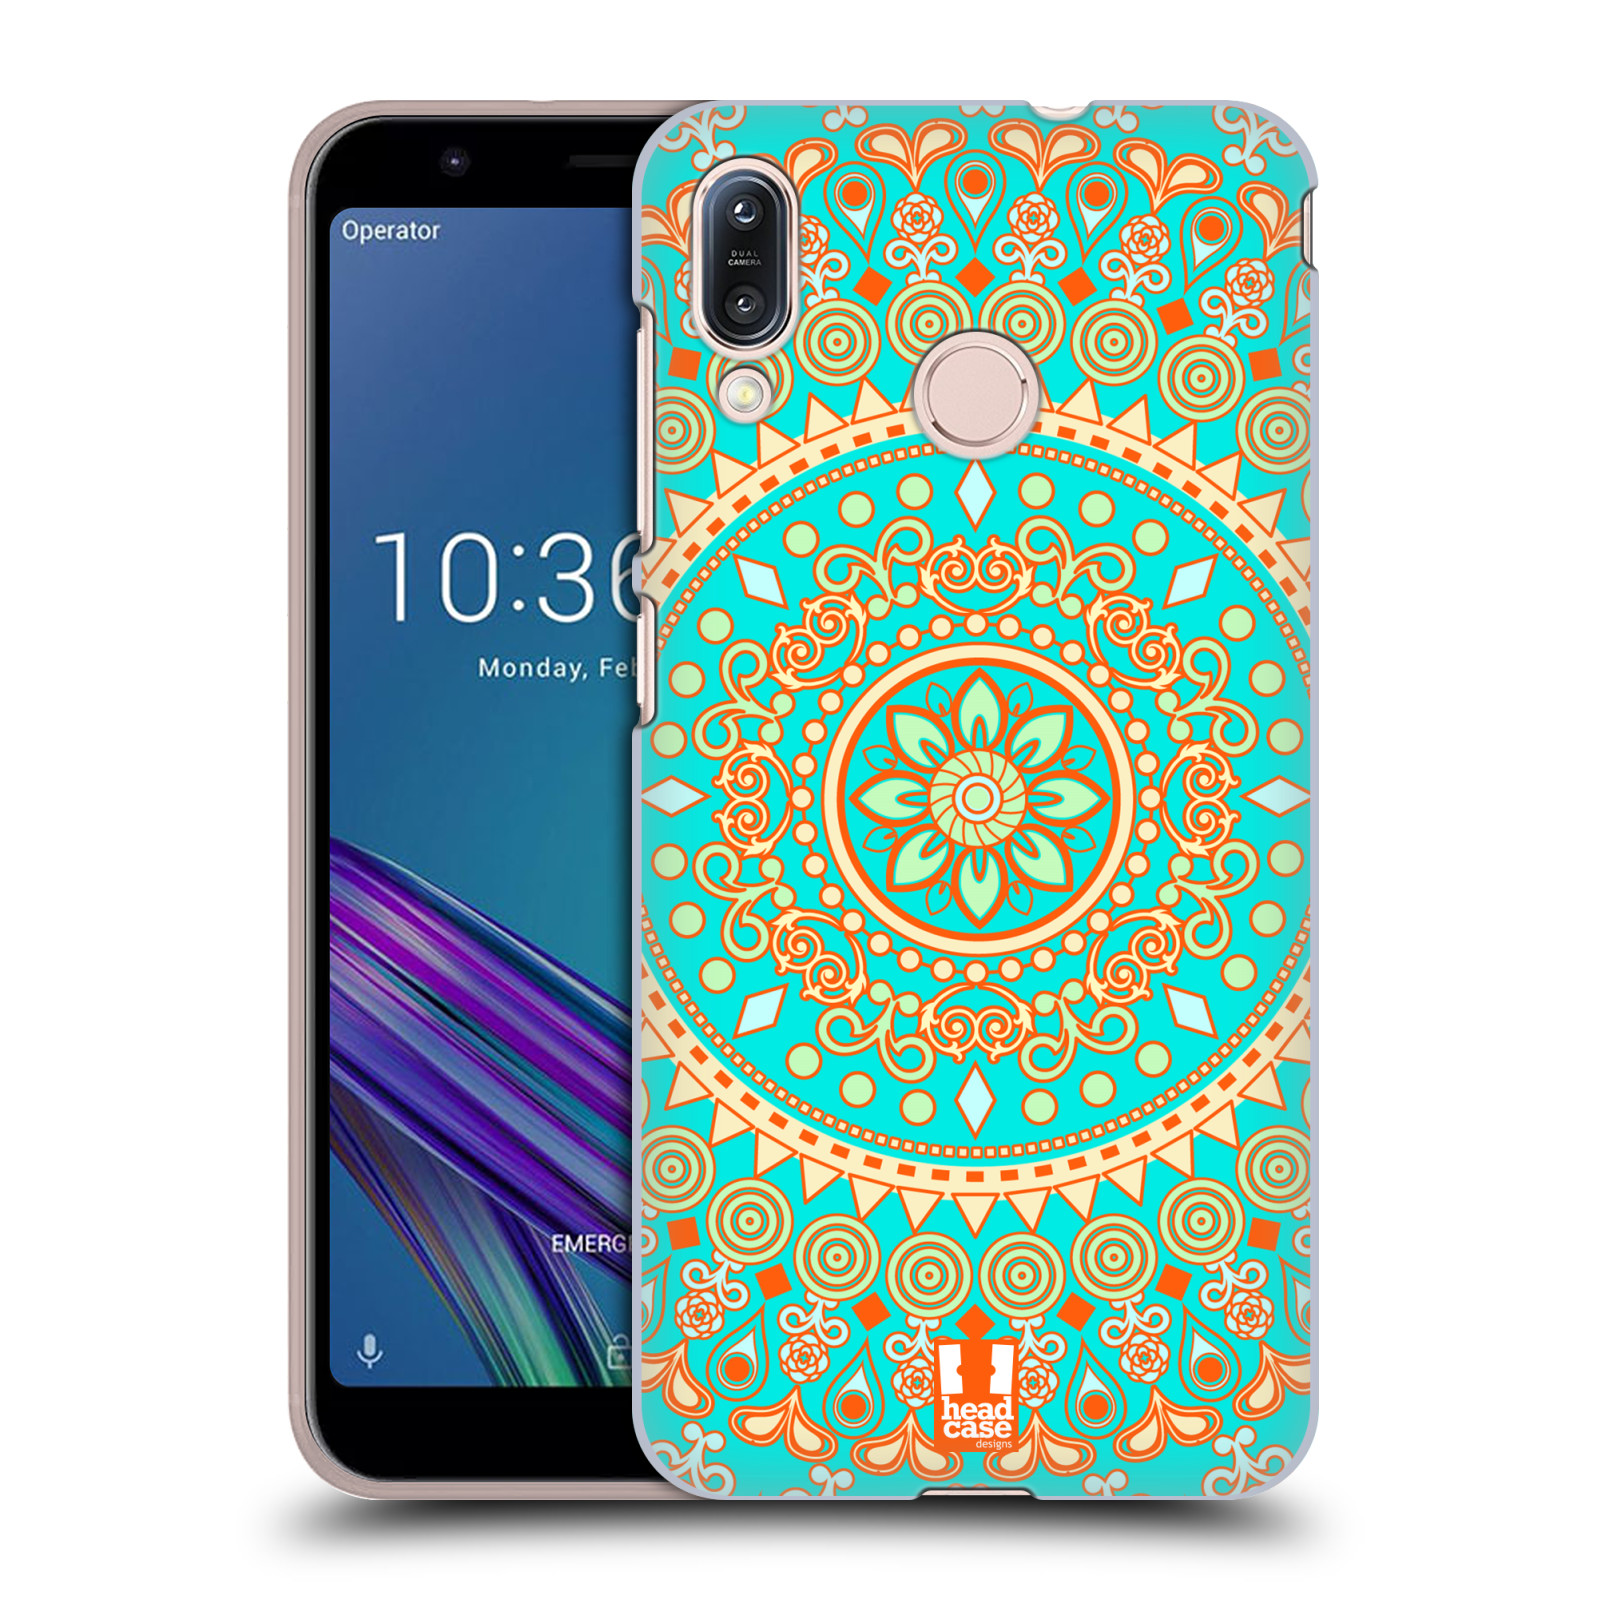 Pouzdro na mobil Asus Zenfone Max M1 (ZB555KL) - HEAD CASE - vzor Indie Mandala slunce barevný motiv TYRKYSOVÁ, ZELENÁ